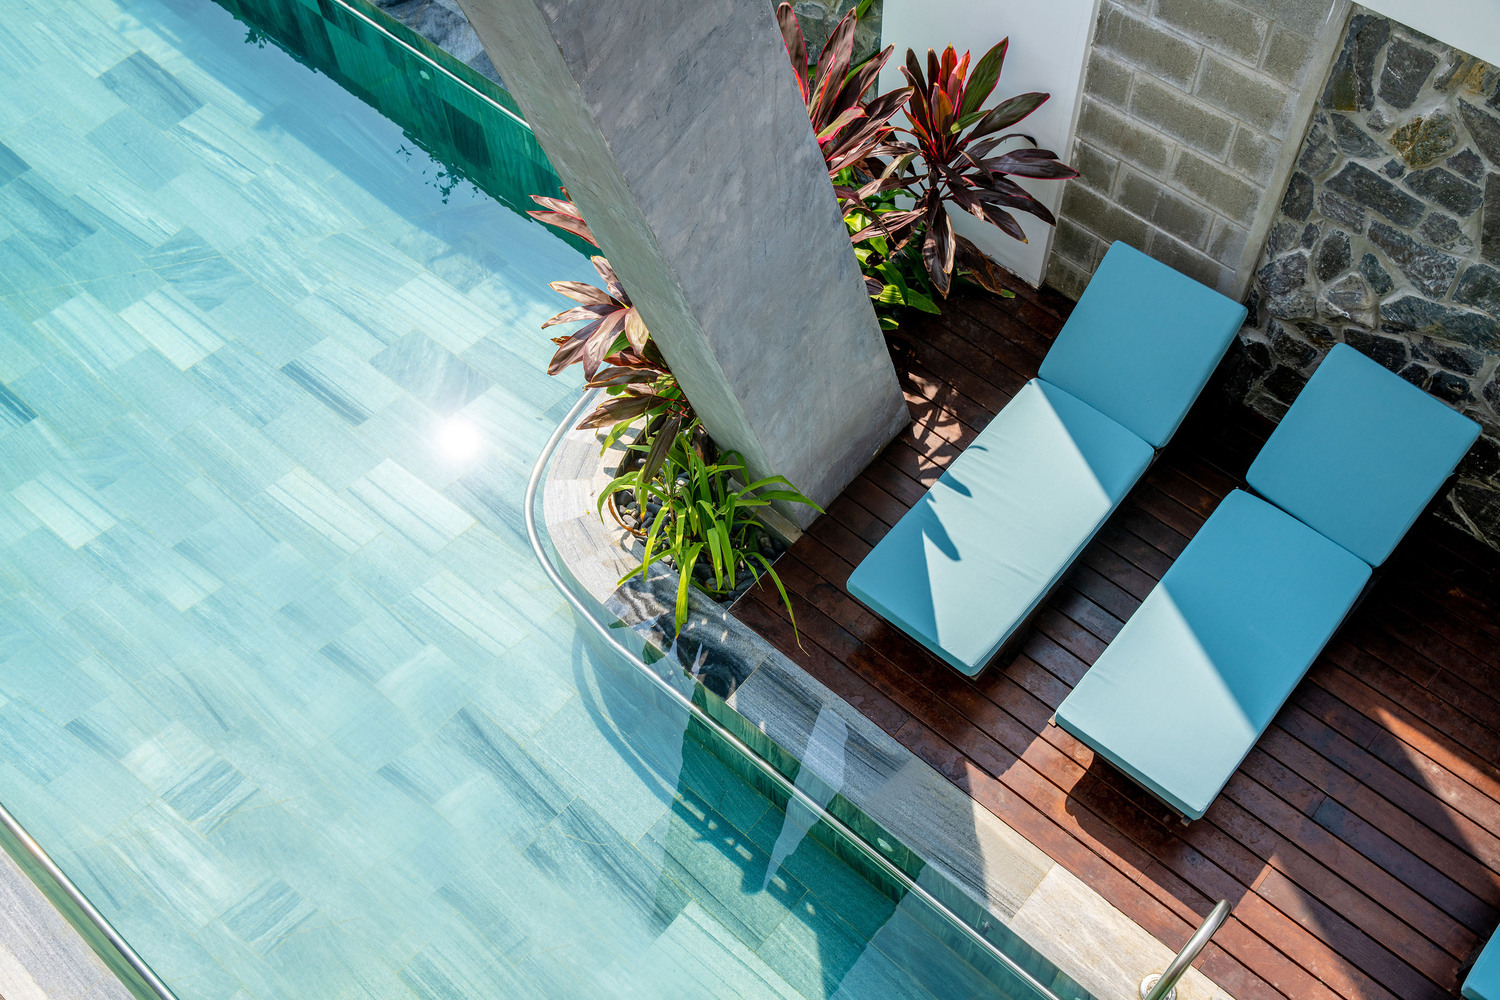 Hình ảnh cận cảnh góc thư giãn, ghế tắm nắng lý tưởng cạnh bể bơi trong xanh.